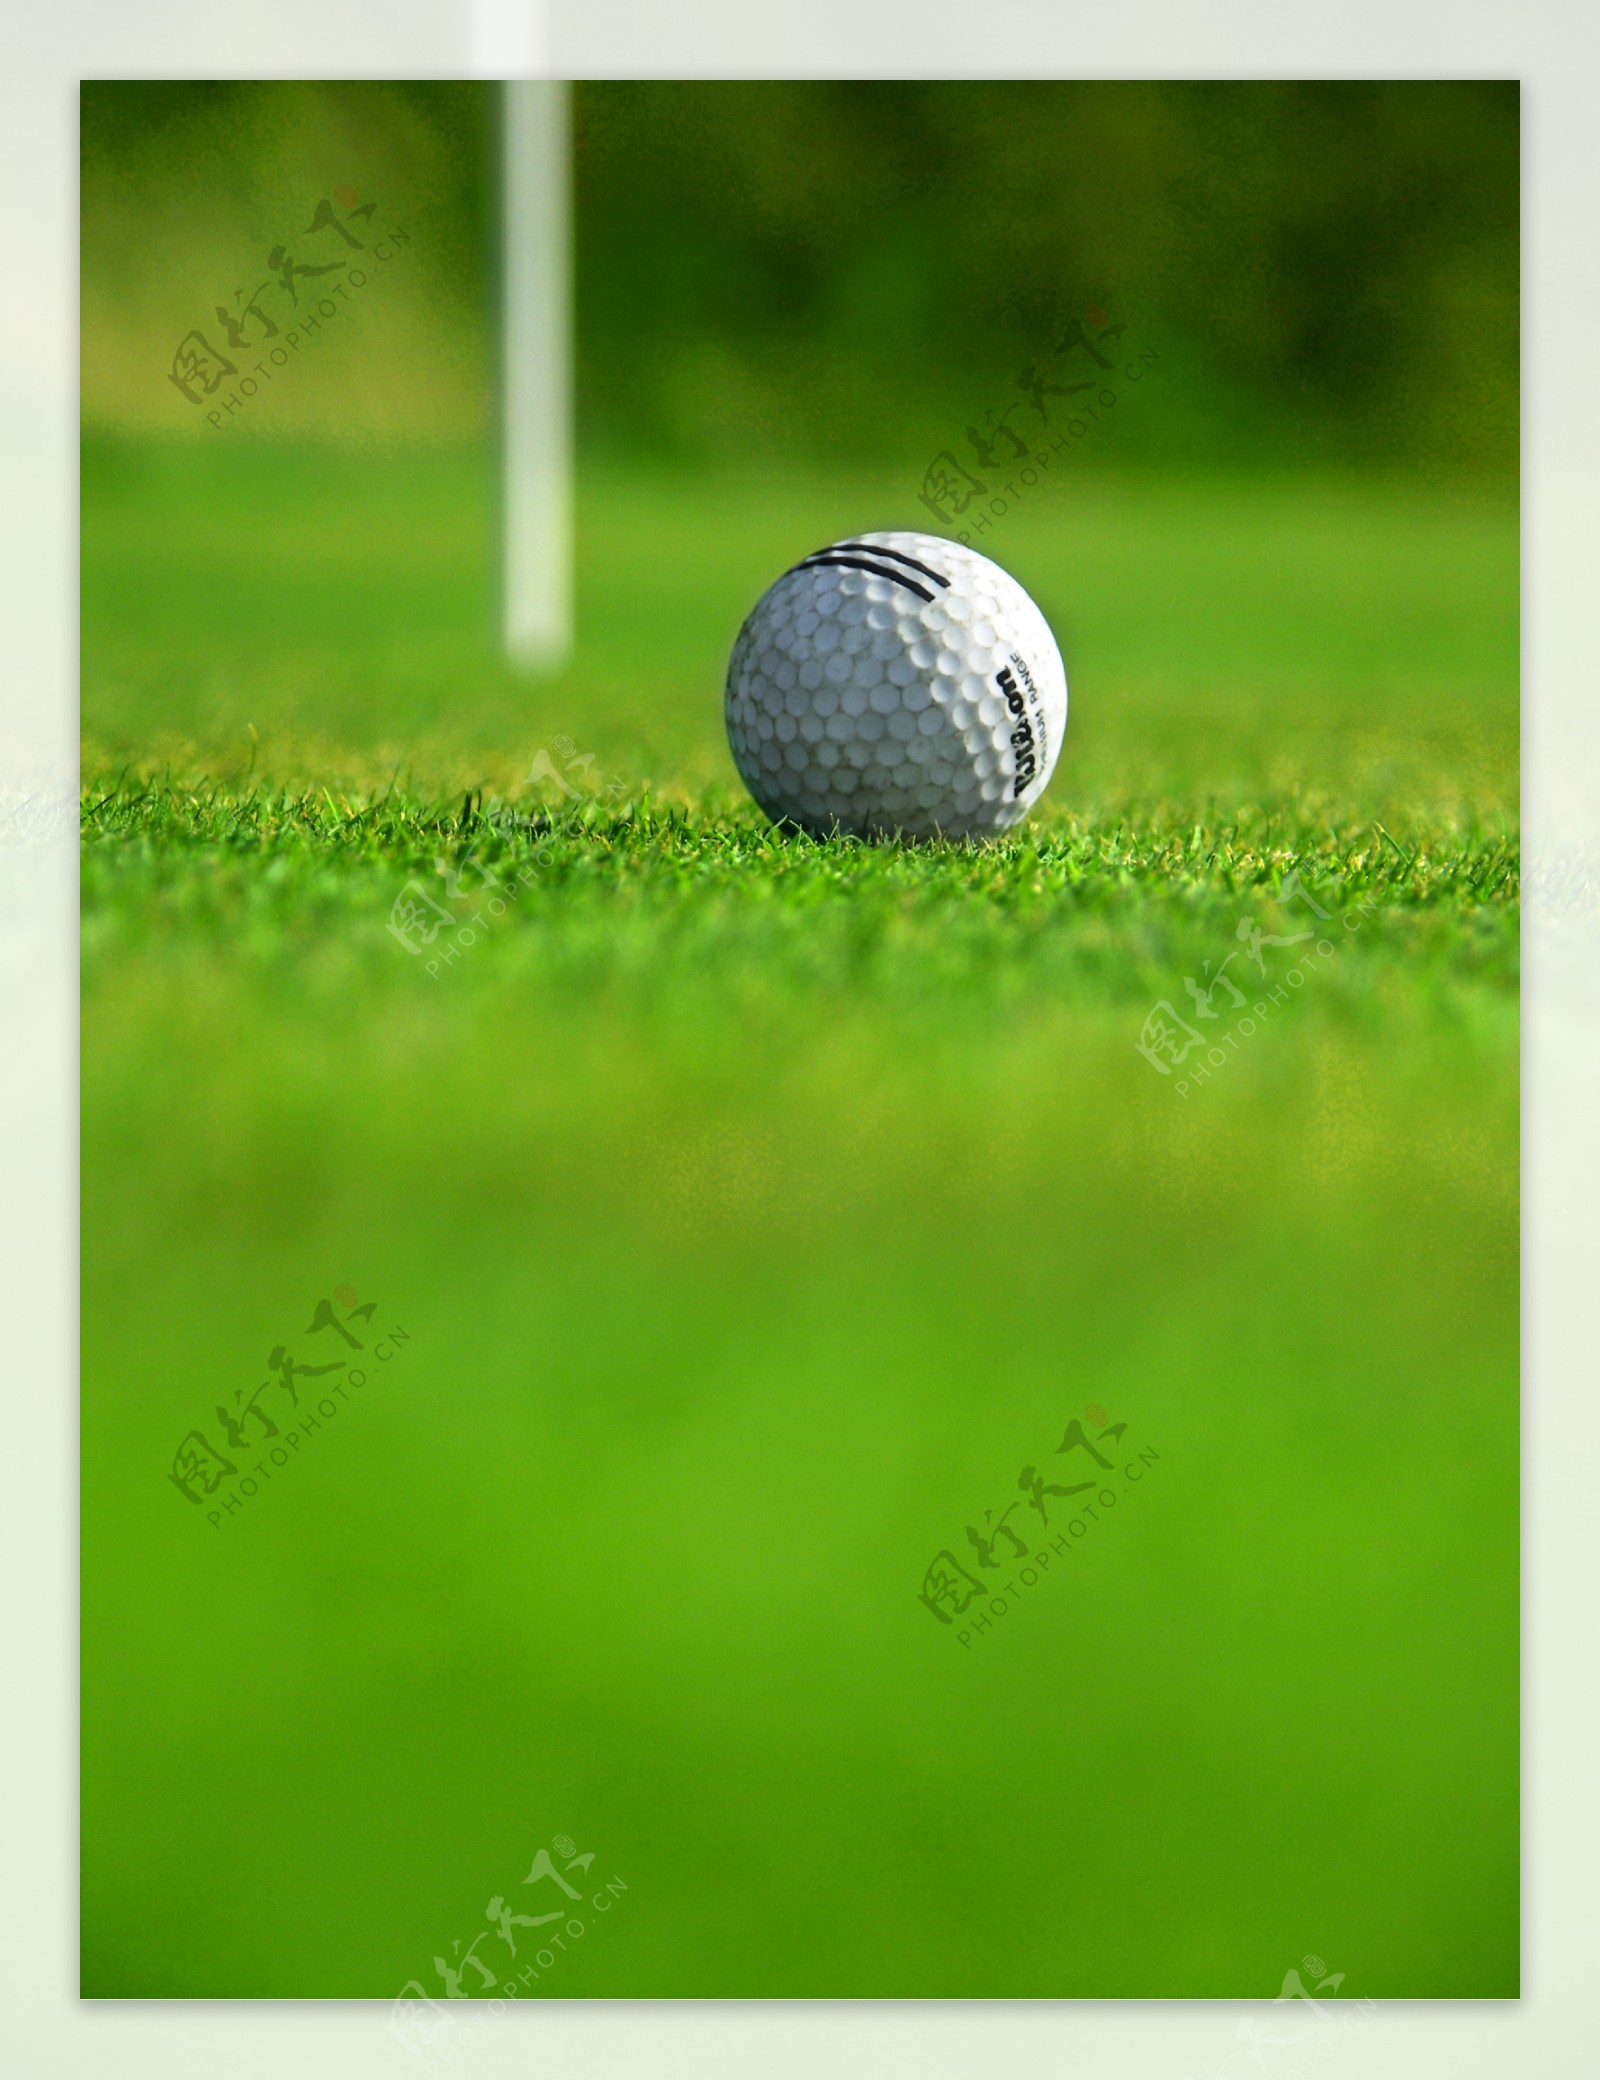 高尔夫运动高清图片